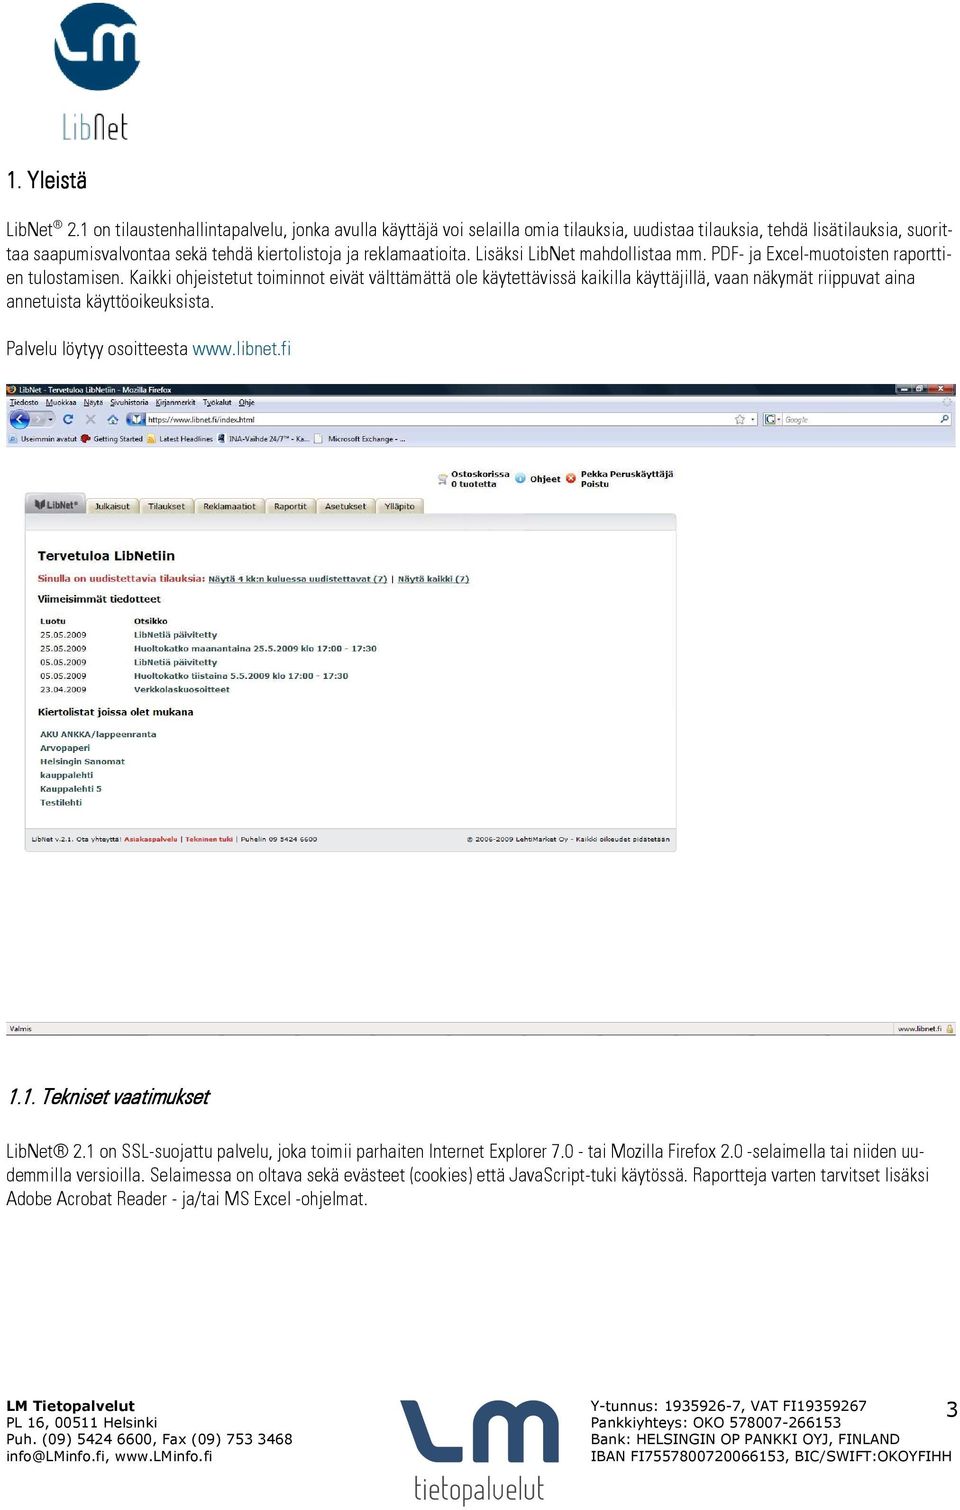 Lisäksi LibNet mahdollistaa mm. PDF- ja Excel-muotoisten raporttien tulostamisen.